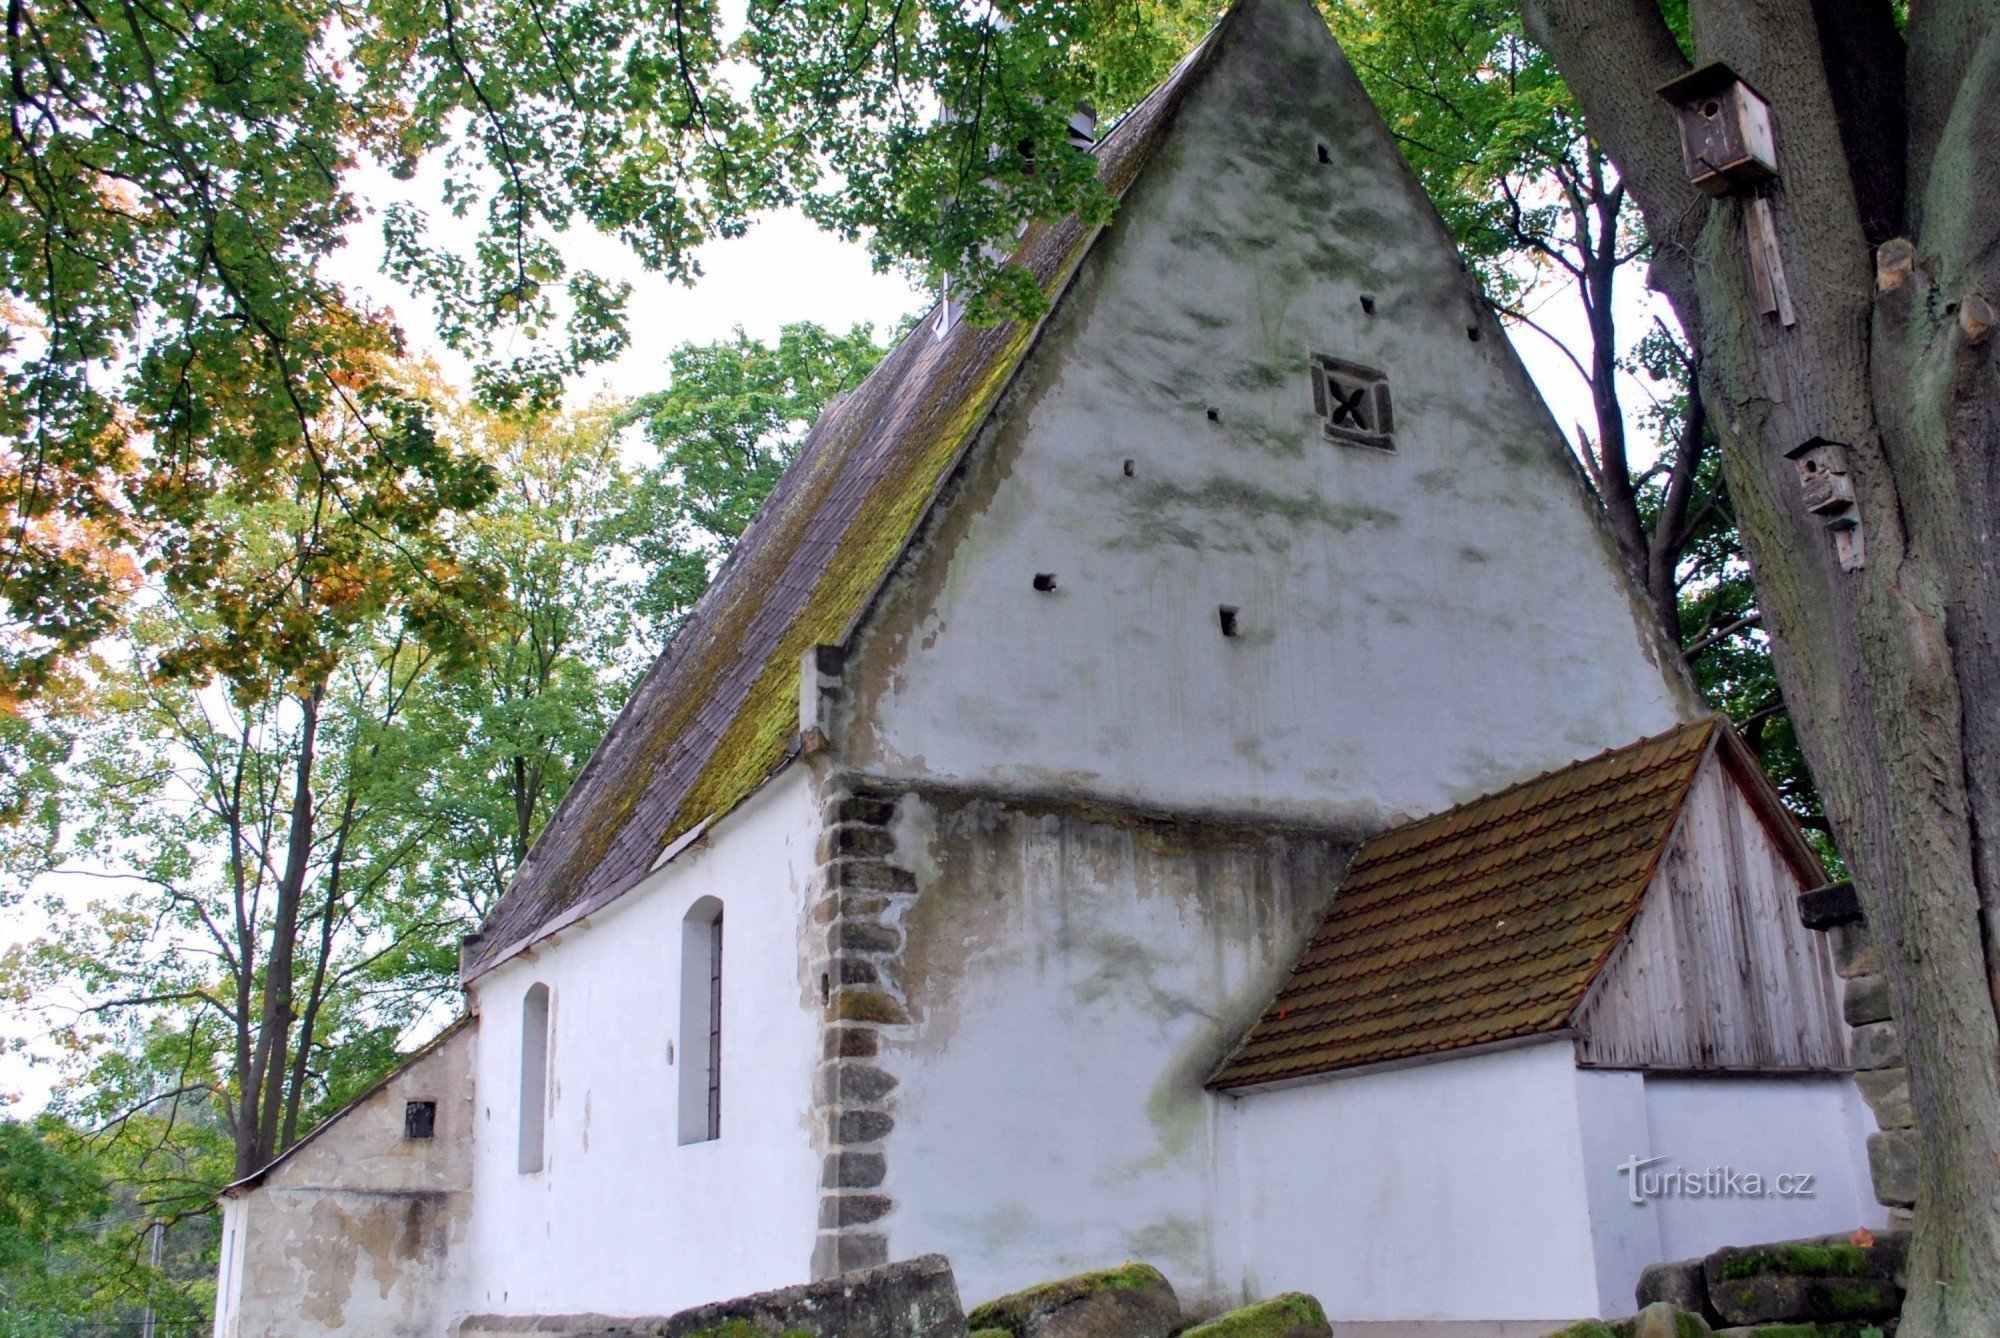 Hostíkovice - den ældste sakrale bygning i Českolipsk